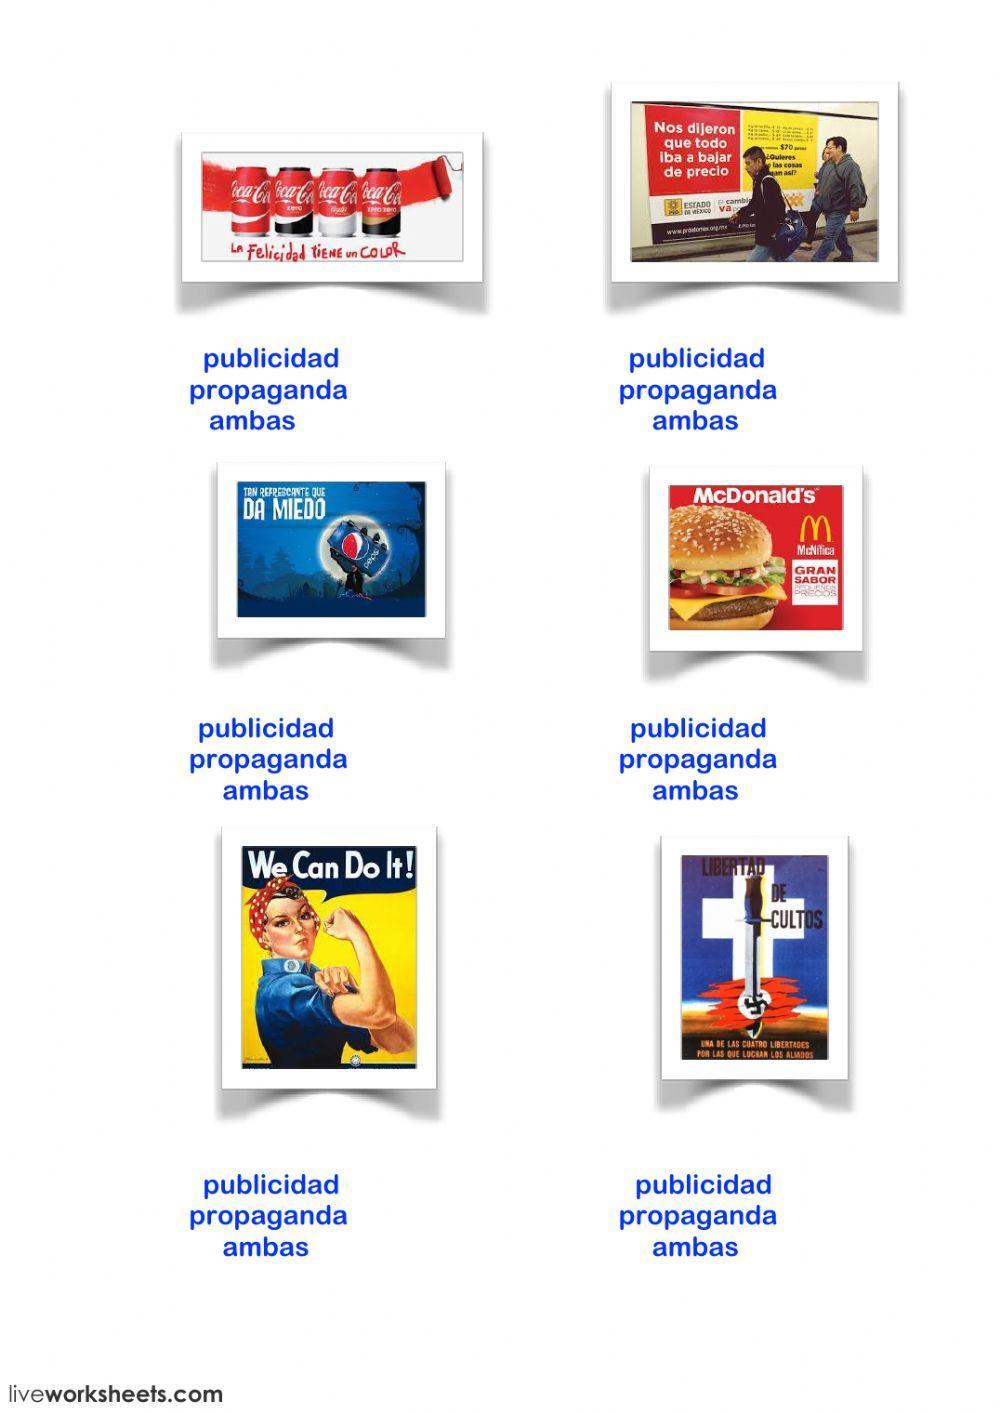 propaganda vs publicidad